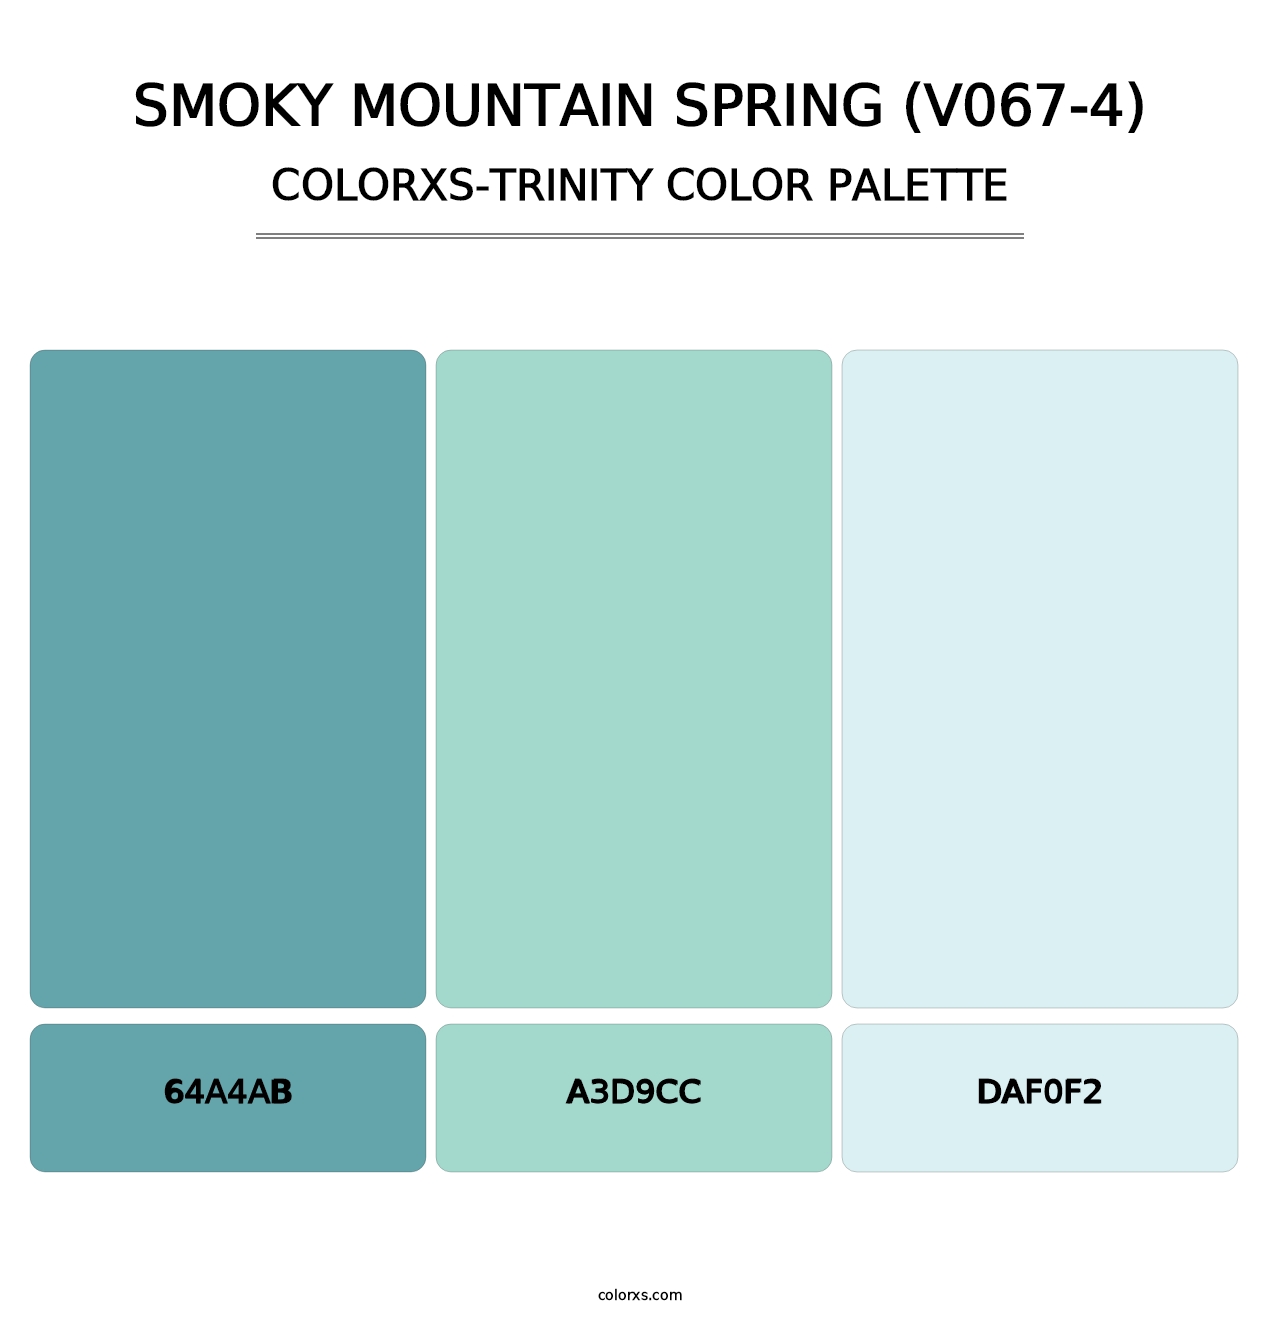 Smoky Mountain Spring (V067-4) - Colorxs Trinity Palette